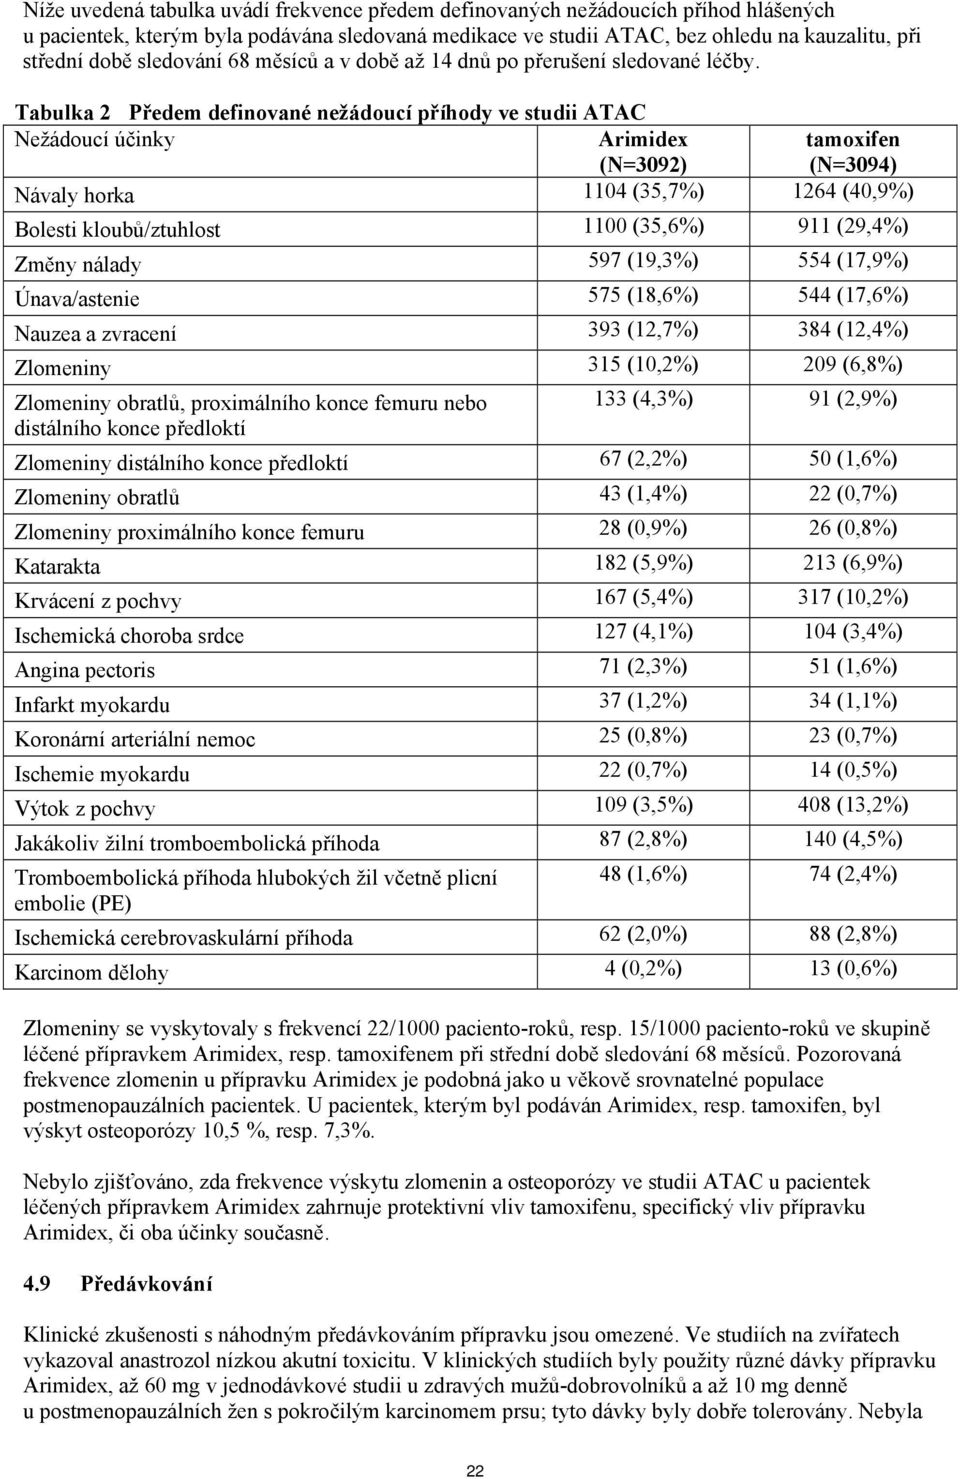 Tabulka 2 Předem definované nežádoucí příhody ve studii ATAC Nežádoucí účinky Arimidex (N=3092) tamoxifen (N=3094) Návaly horka 1104 (35,7%) 1264 (40,9%) Bolesti kloubů/ztuhlost 1100 (35,6%) 911